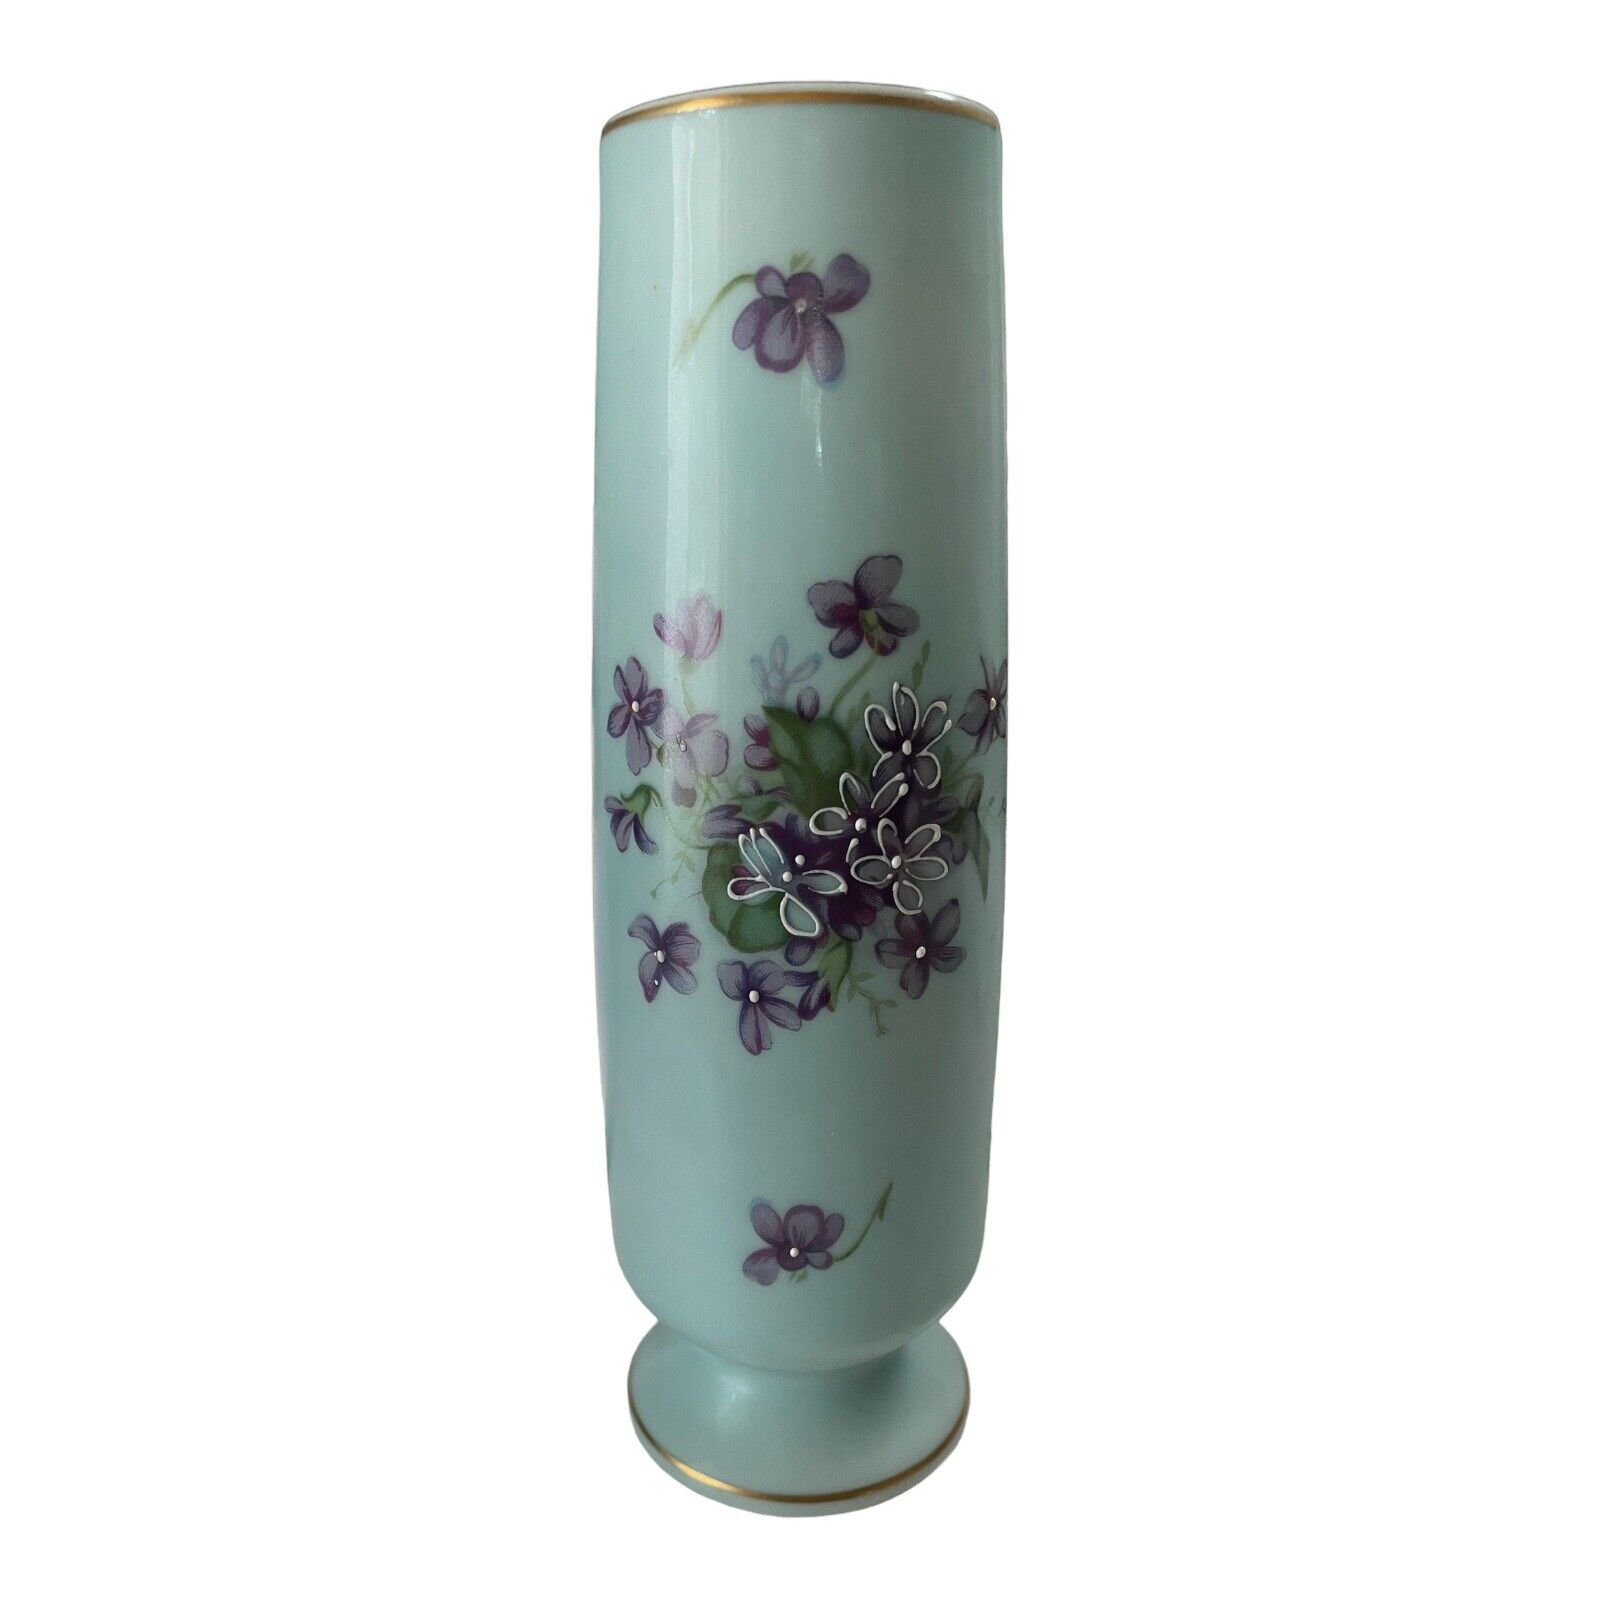 VTG Japanese Norleans Blue Velvet Porcelain Vase 8”